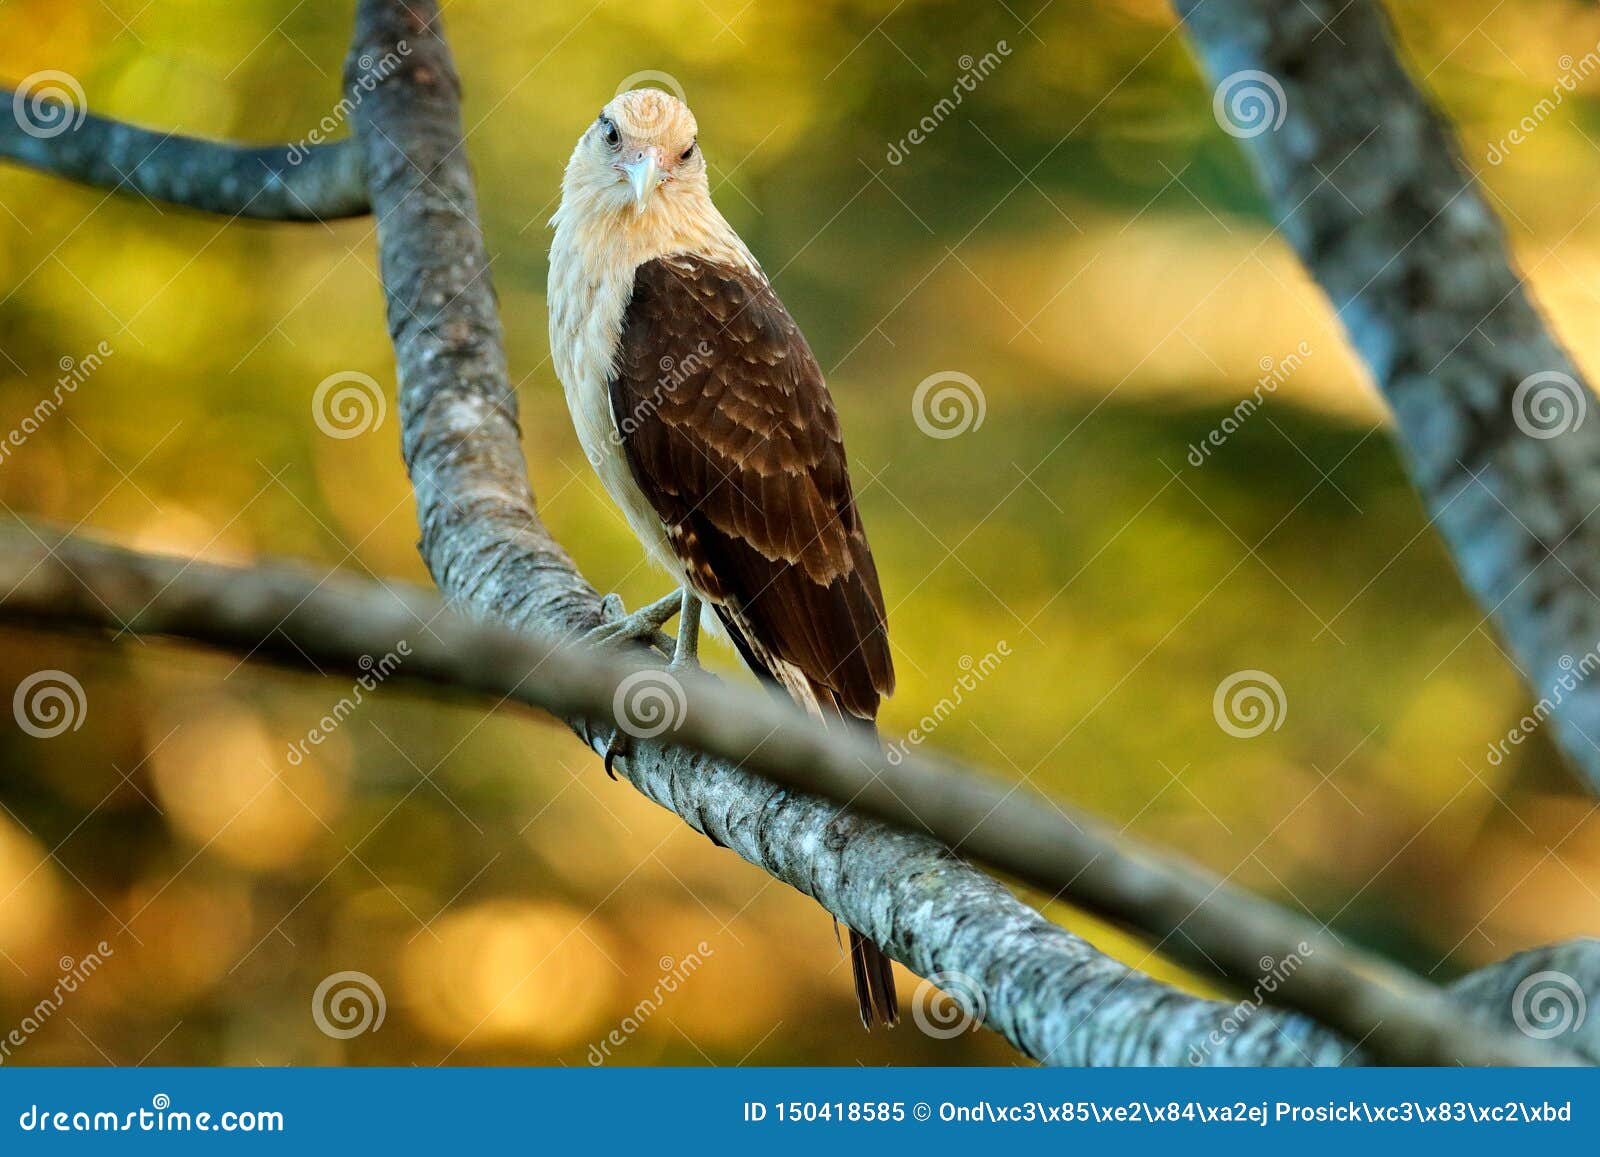 caracara bird of prey